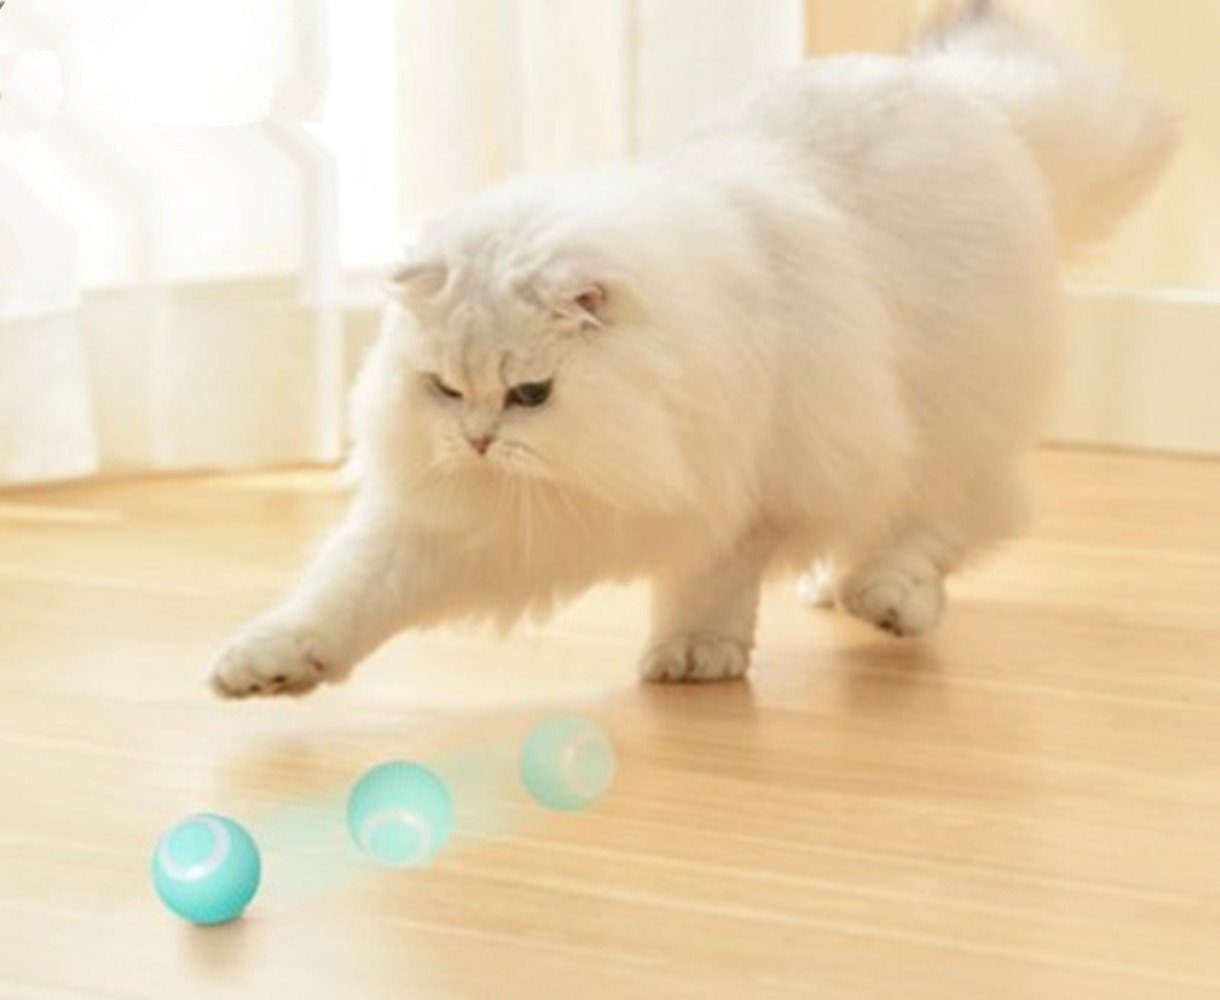 Interaktives Katzenspielzeug, Selbstbeschäftigung LED Katzenspielzeug Licht 2 Stück Tierball Ball Smart mit green autolock Katzenspielzeug